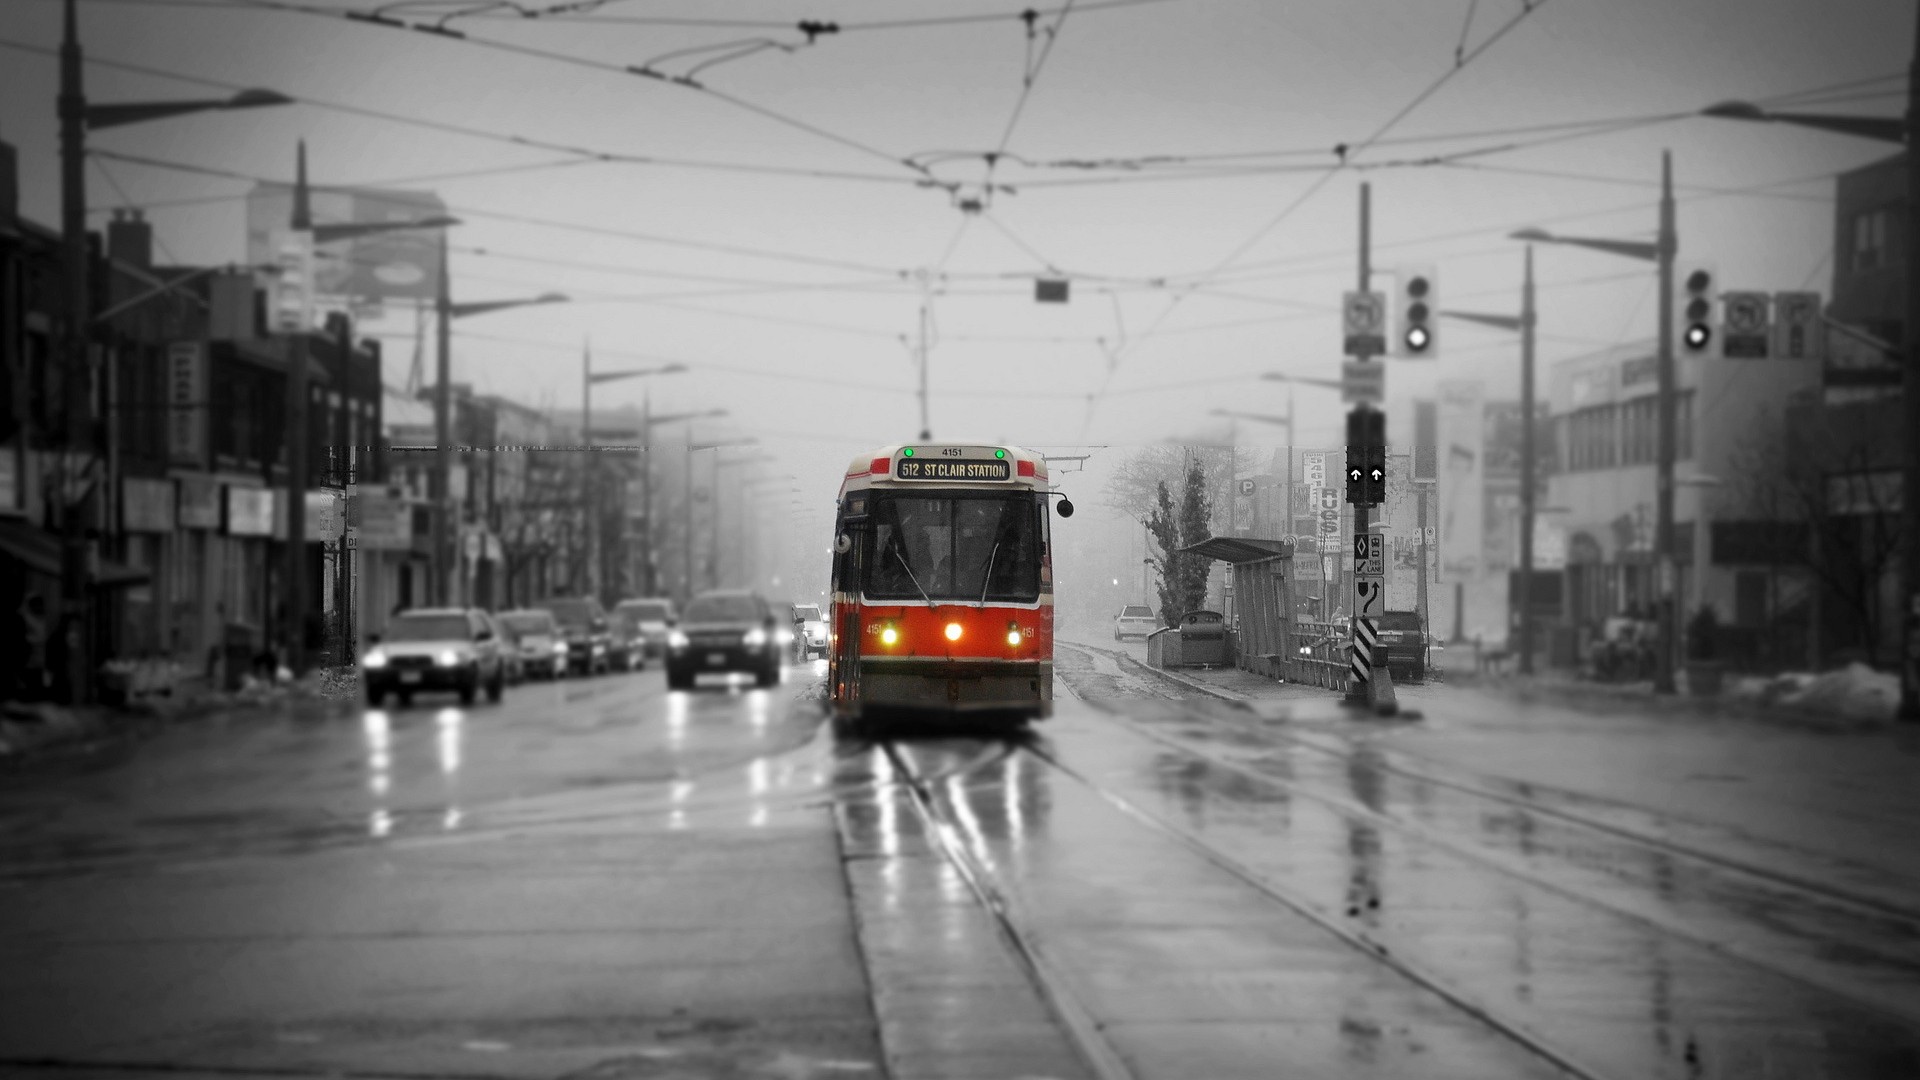 toronto, traffic, vehicles, tram, rain